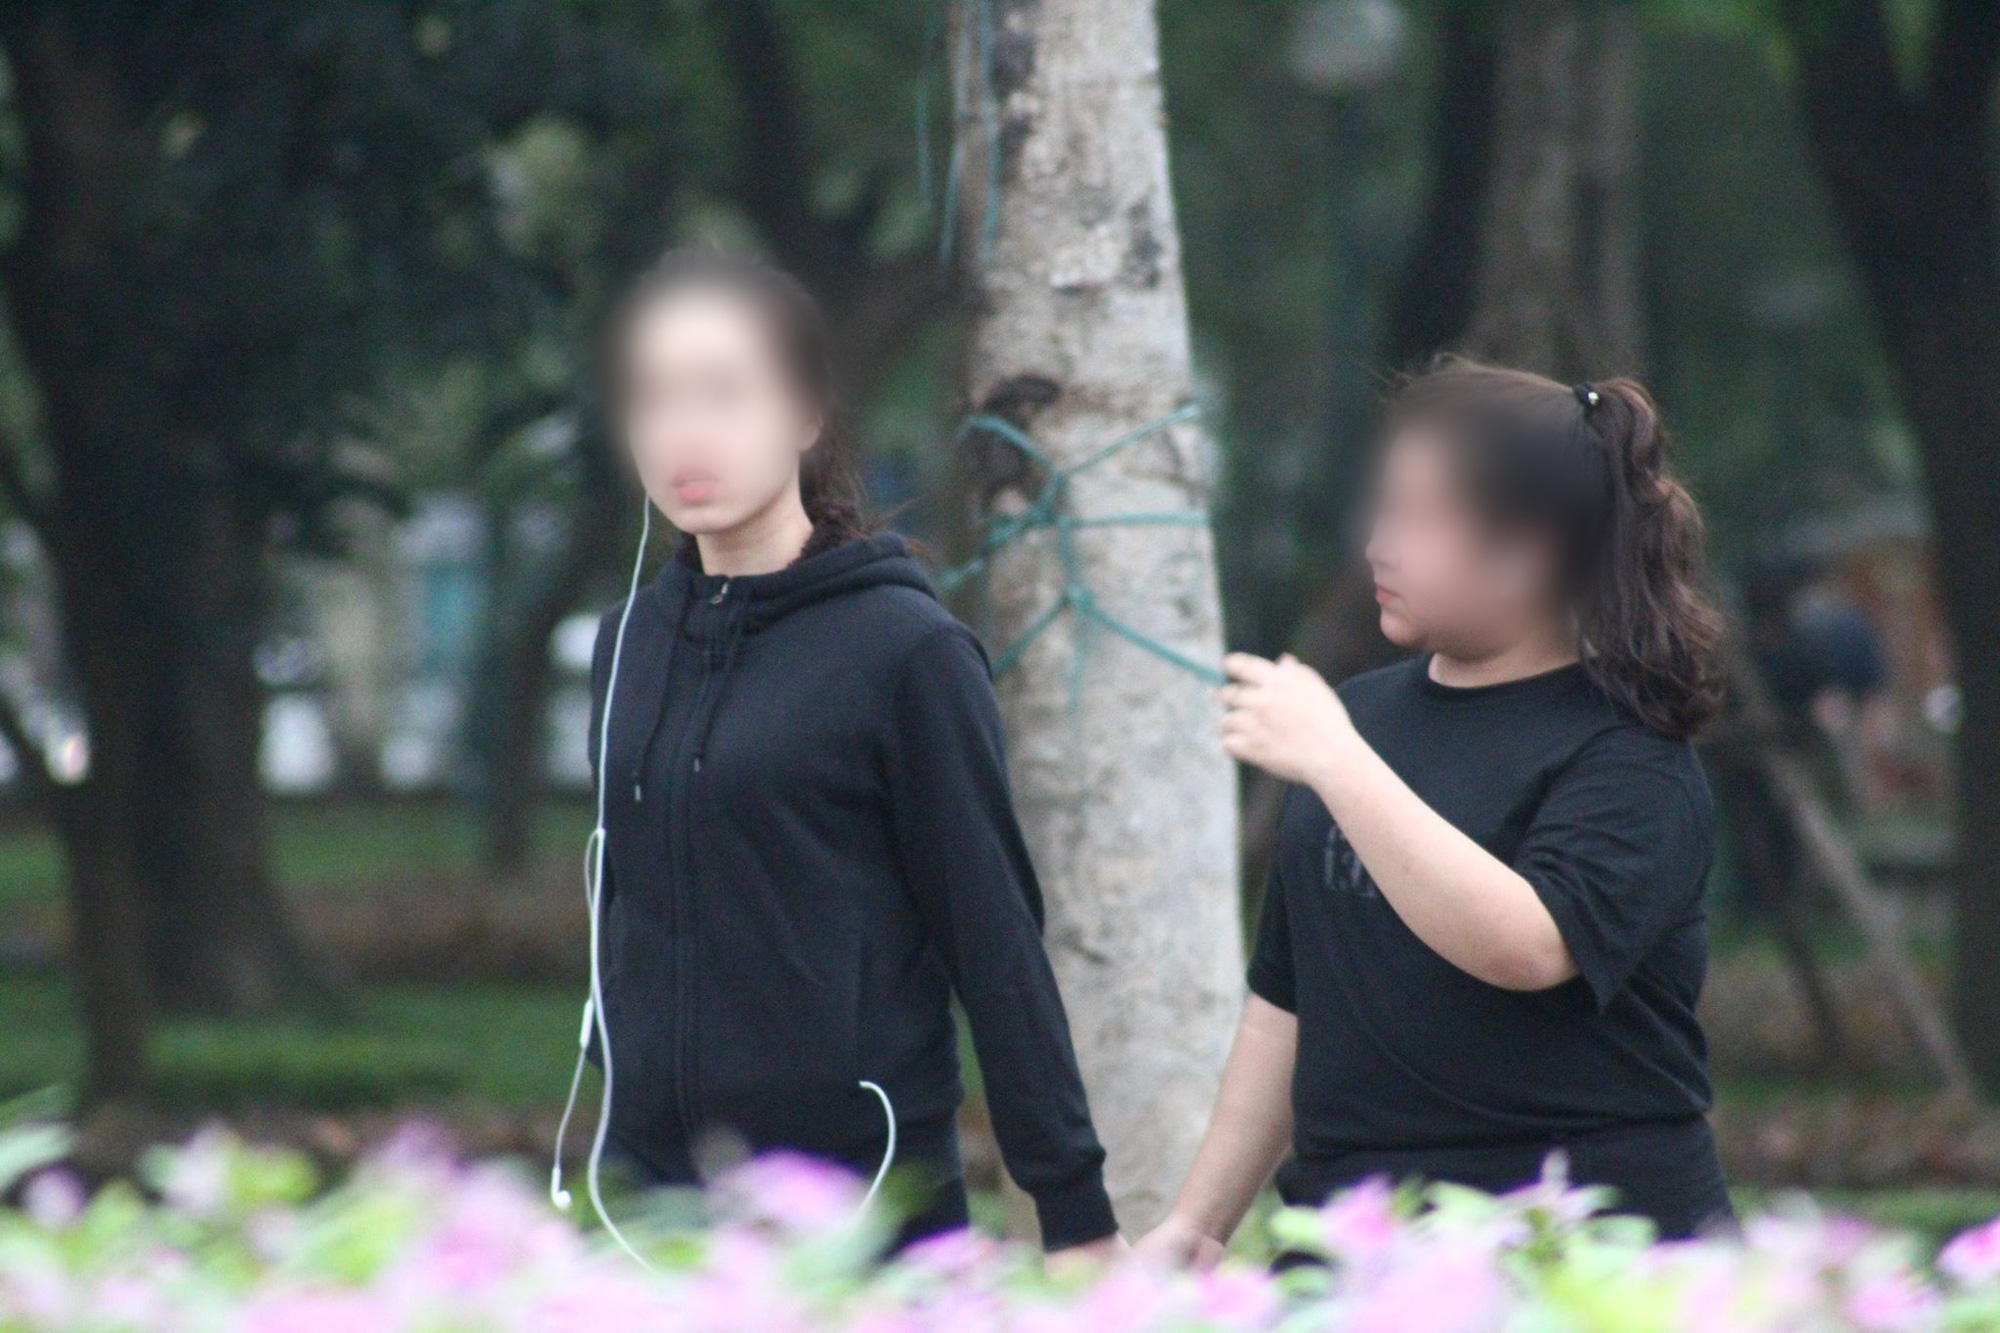 ẢNH: Bất chấp quy định xử phạt hành chính, nhiều người dân ở Hà Nội và Sài Gòn vẫn không đeo khẩu trang đến công viên tập thể dục - Ảnh 9.